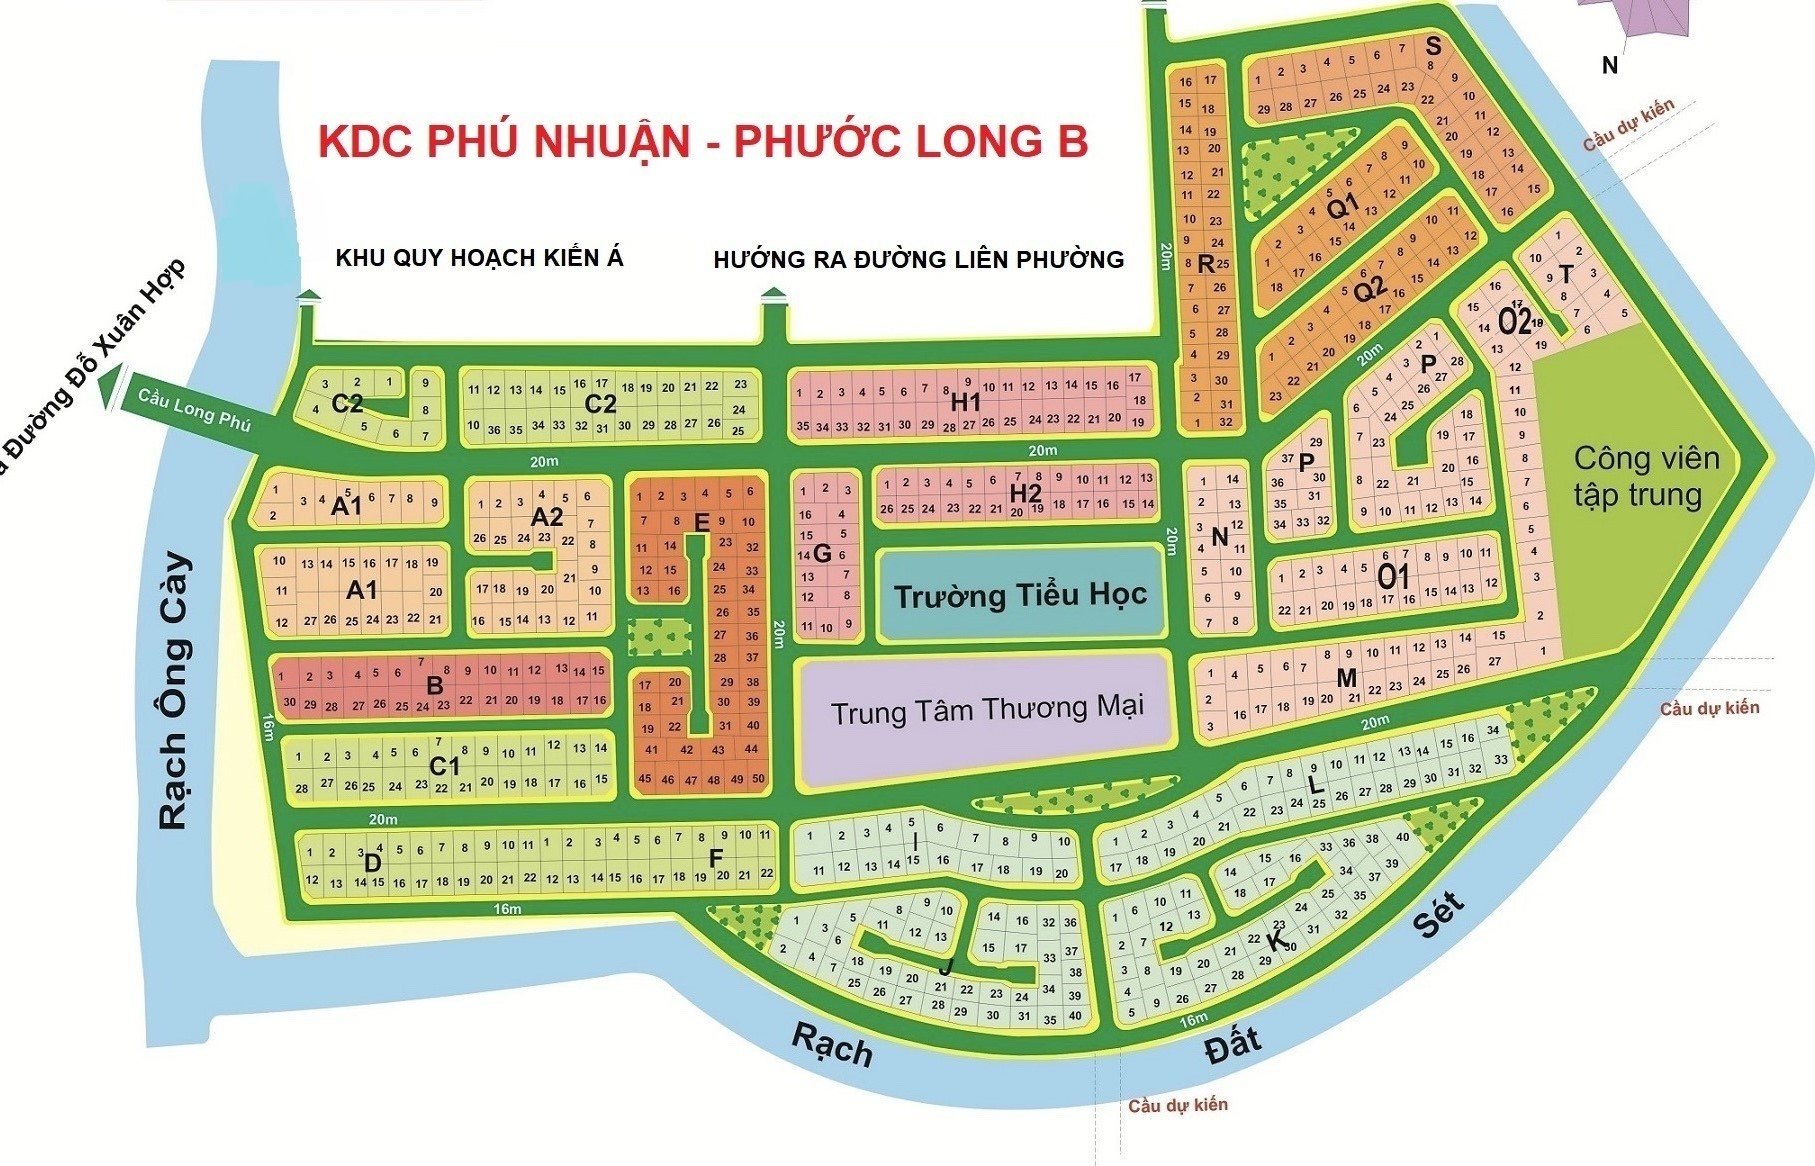 Bán nền đất diện tích 280m2, vị trí tương lai phù hợp kinh doanh tại KDC Phú Nhuận, PLB, Quận 9